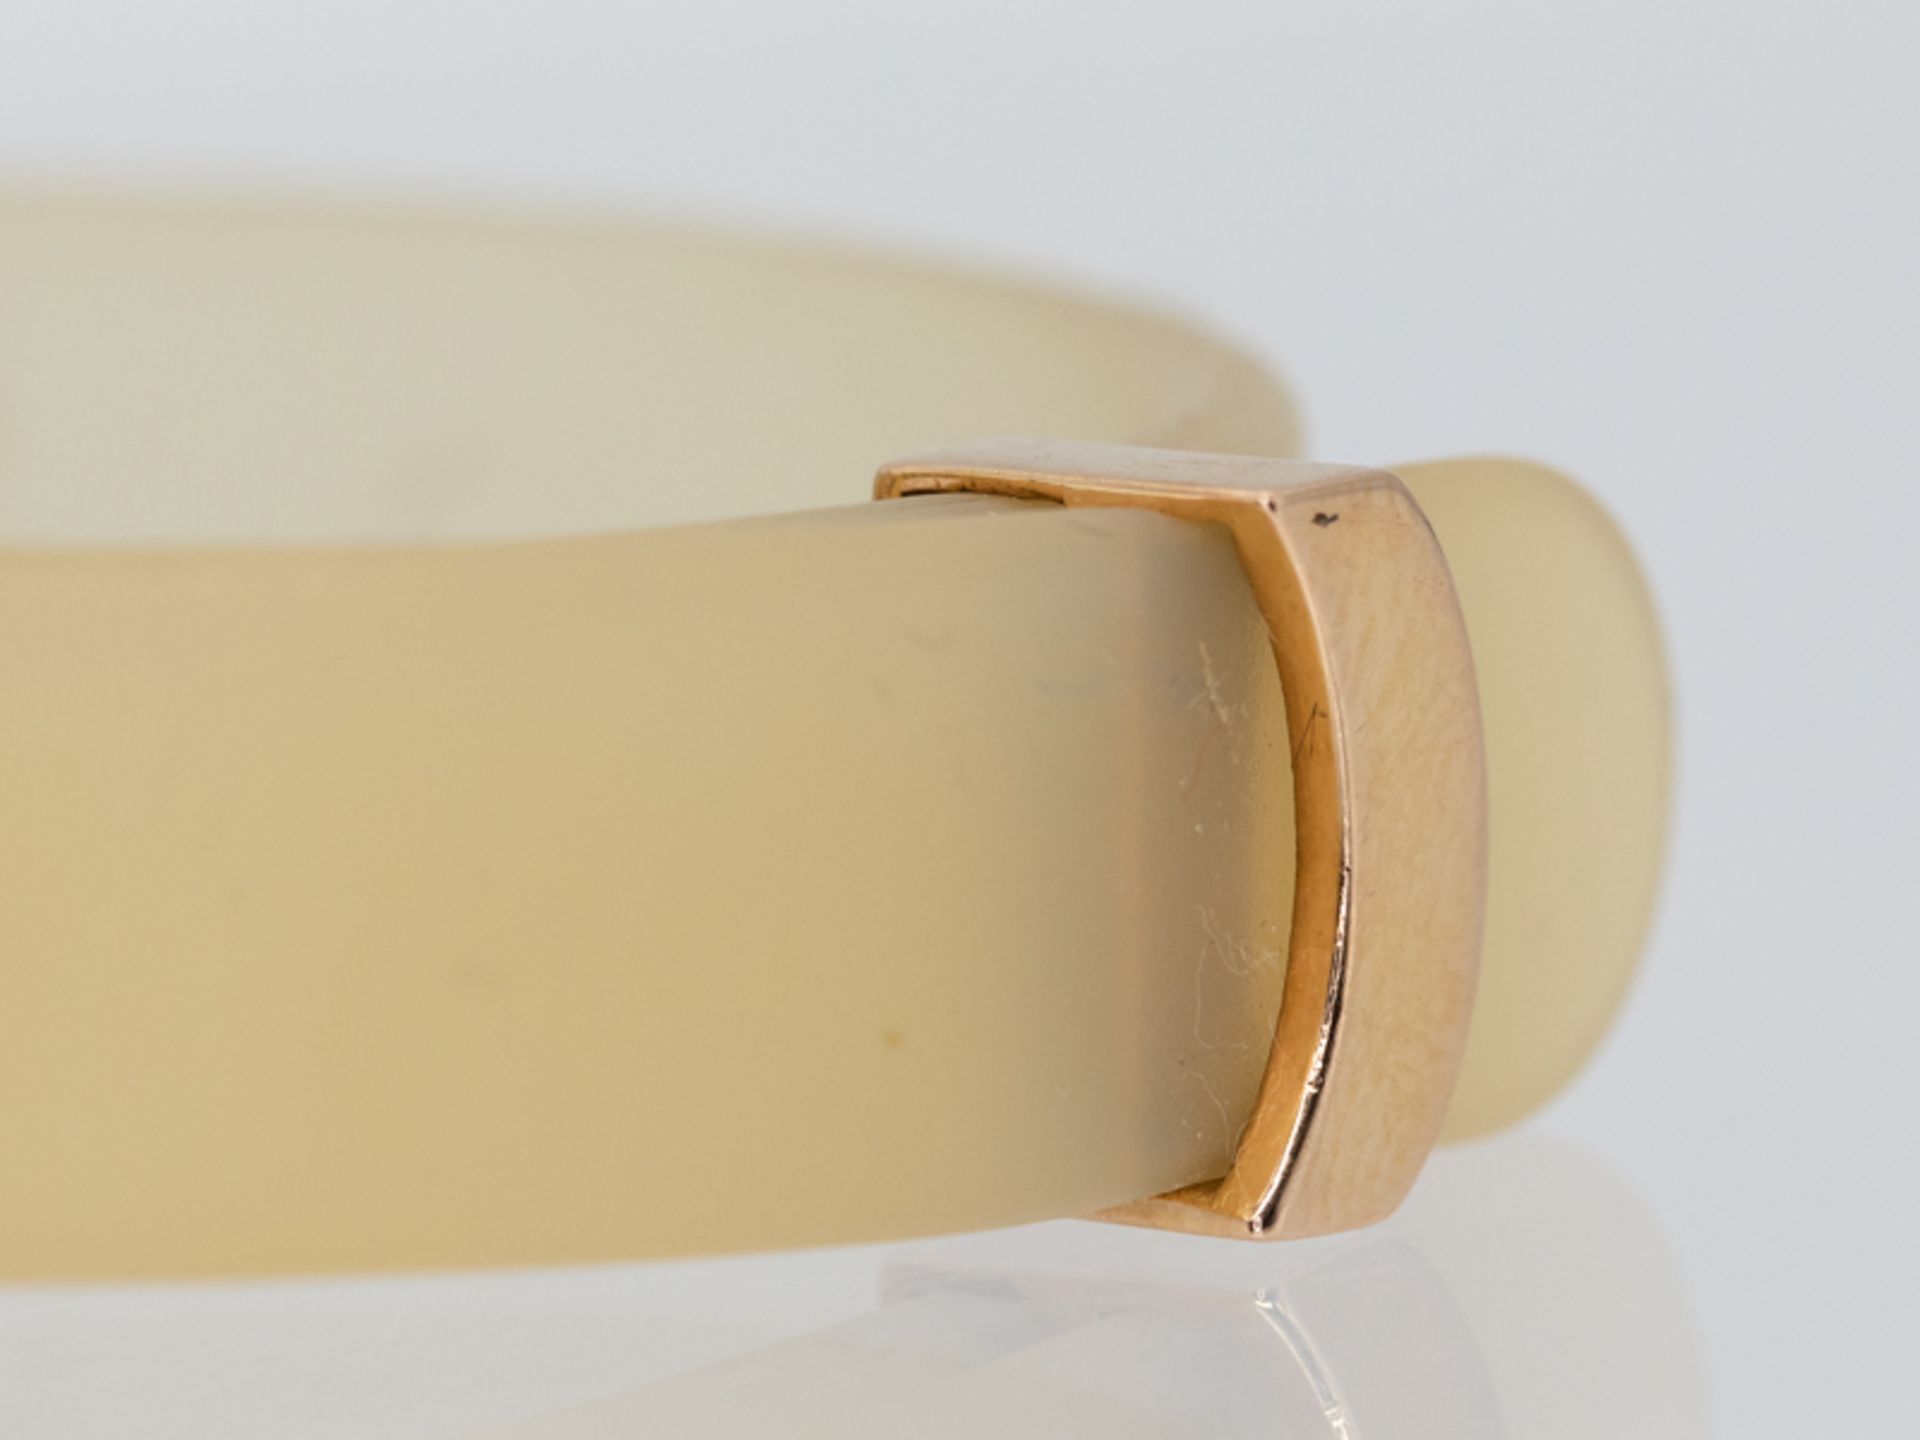 Armband aus Kautschuk mit goldener Schließe und 14 kleinen Brillanten, zus. ca. 0,14 ct, bez. Alessa - Image 7 of 7